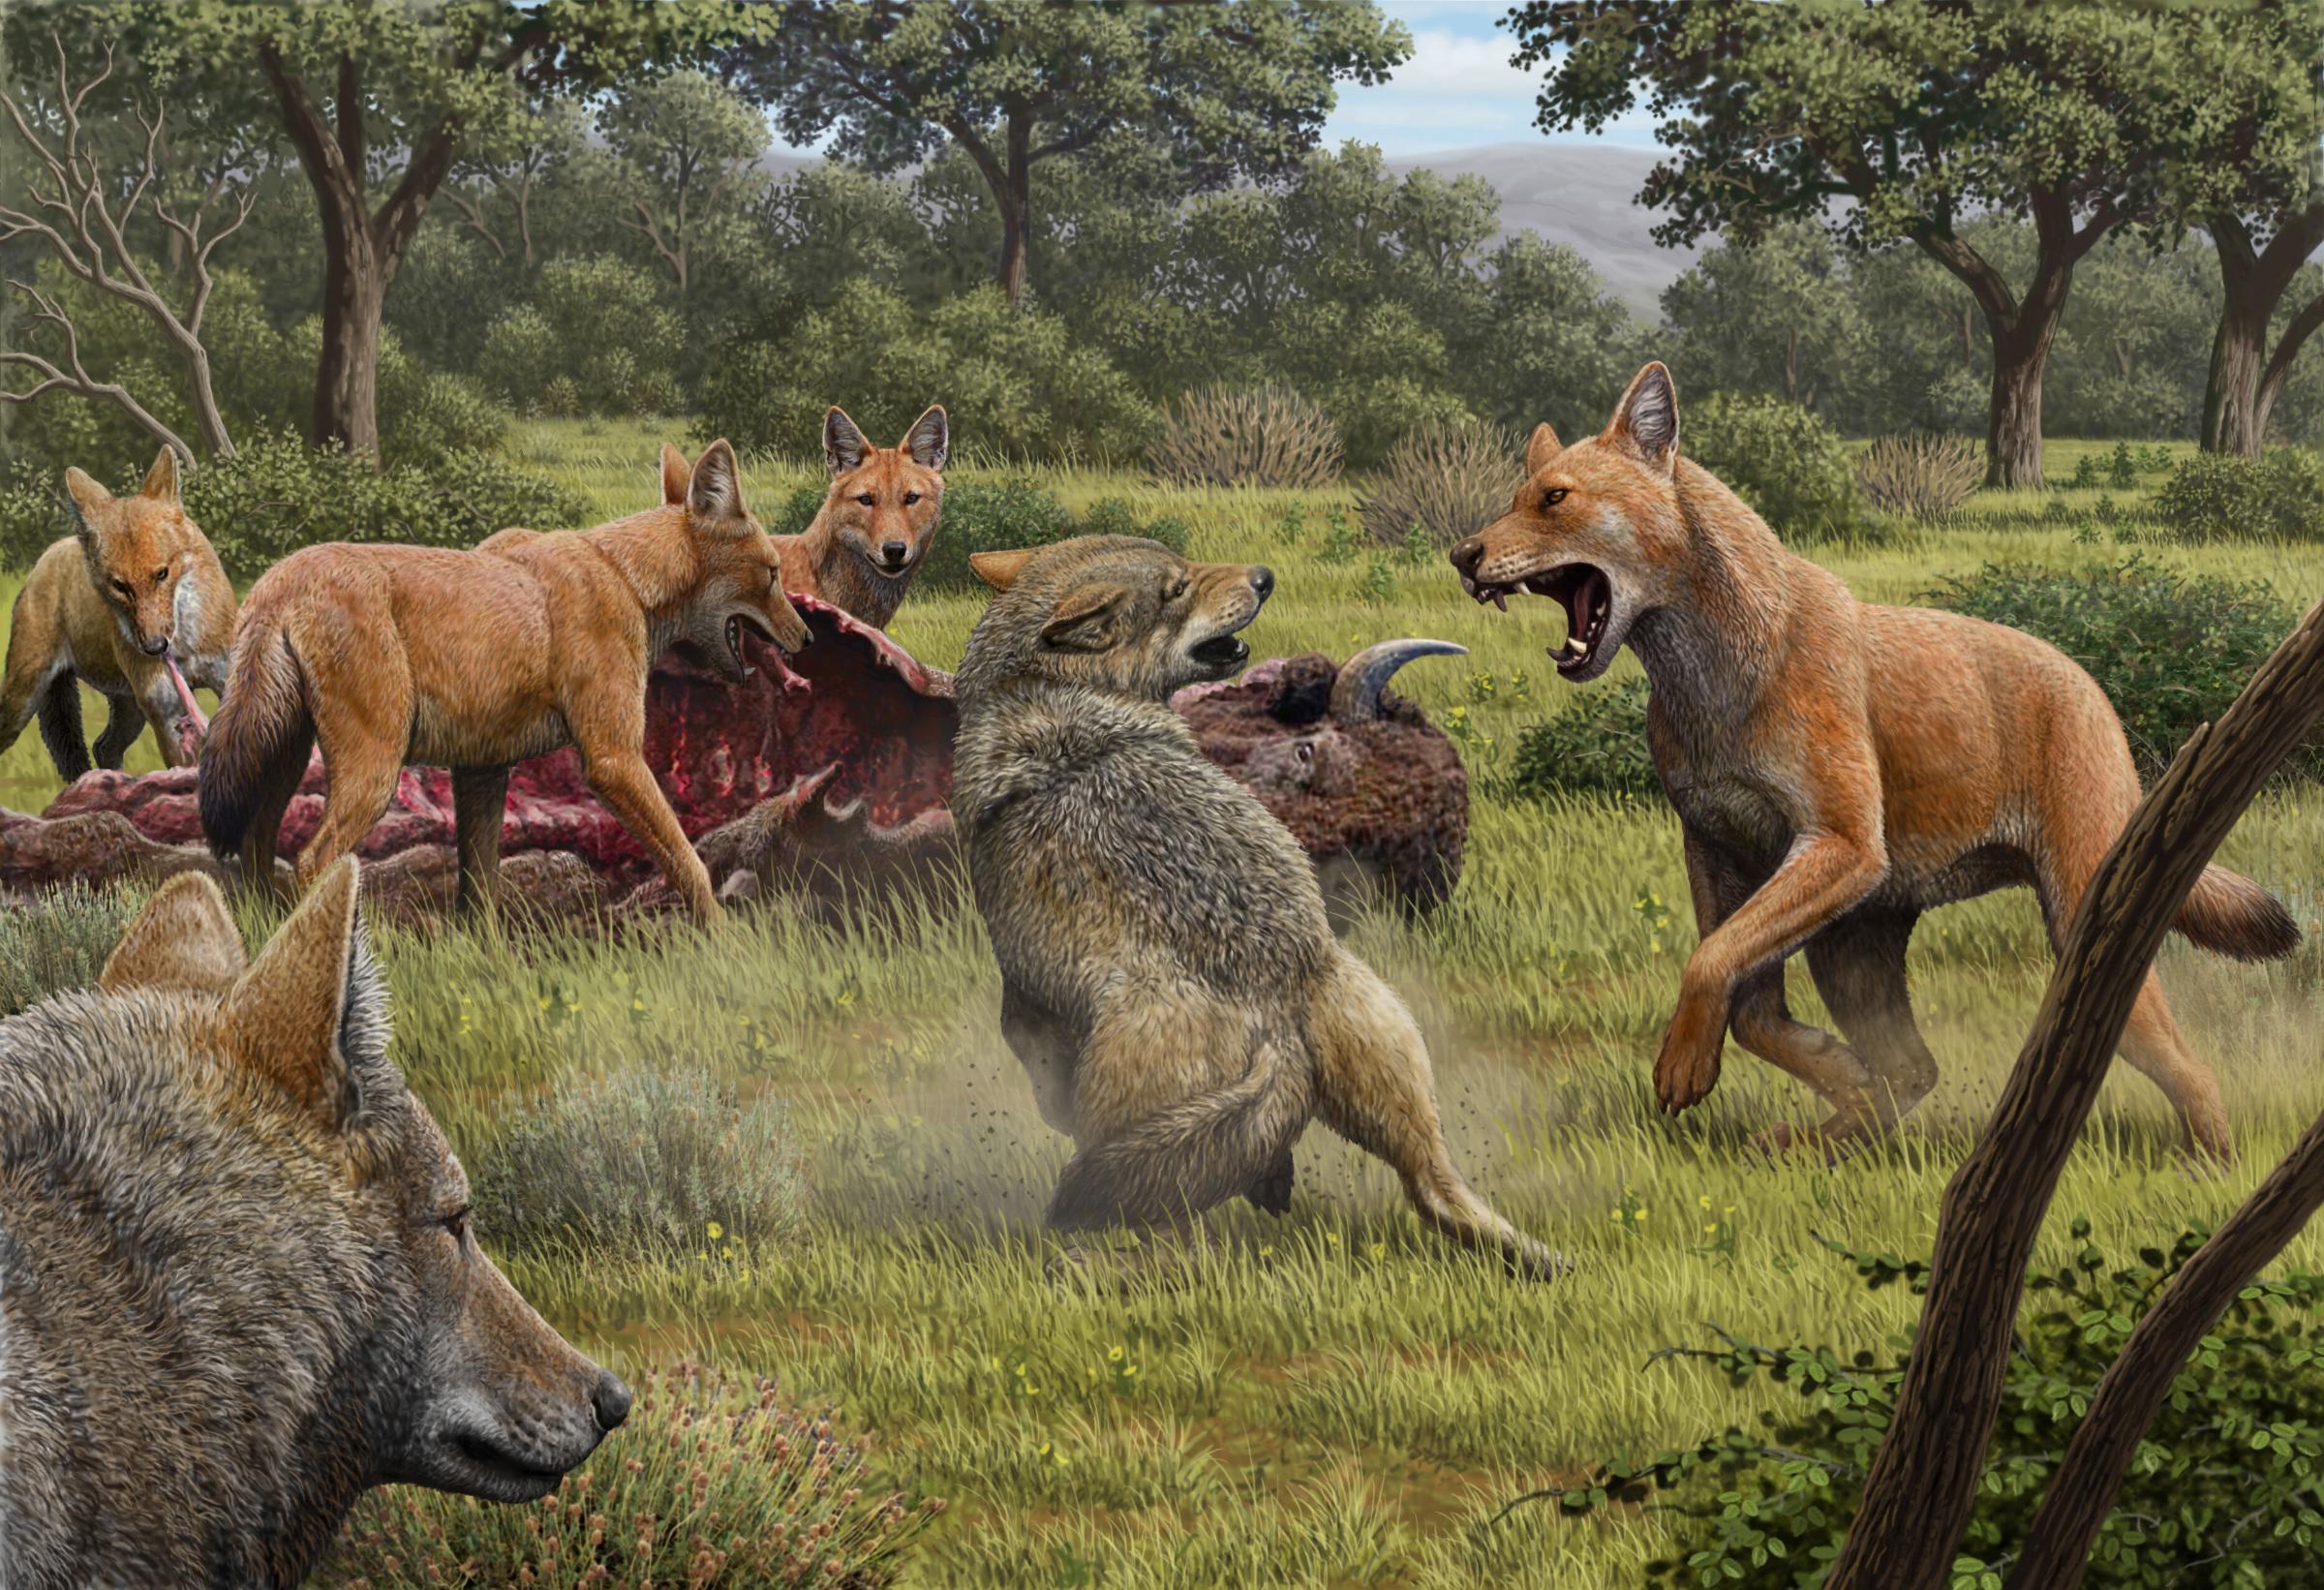 Ein Rudel „Schattenwölfe“ (Canis dirus) frisst von einem Bison, während sich ein Paar grauer Wölfe (Canis lupus) in der Hoffnung auf Beute nähert.